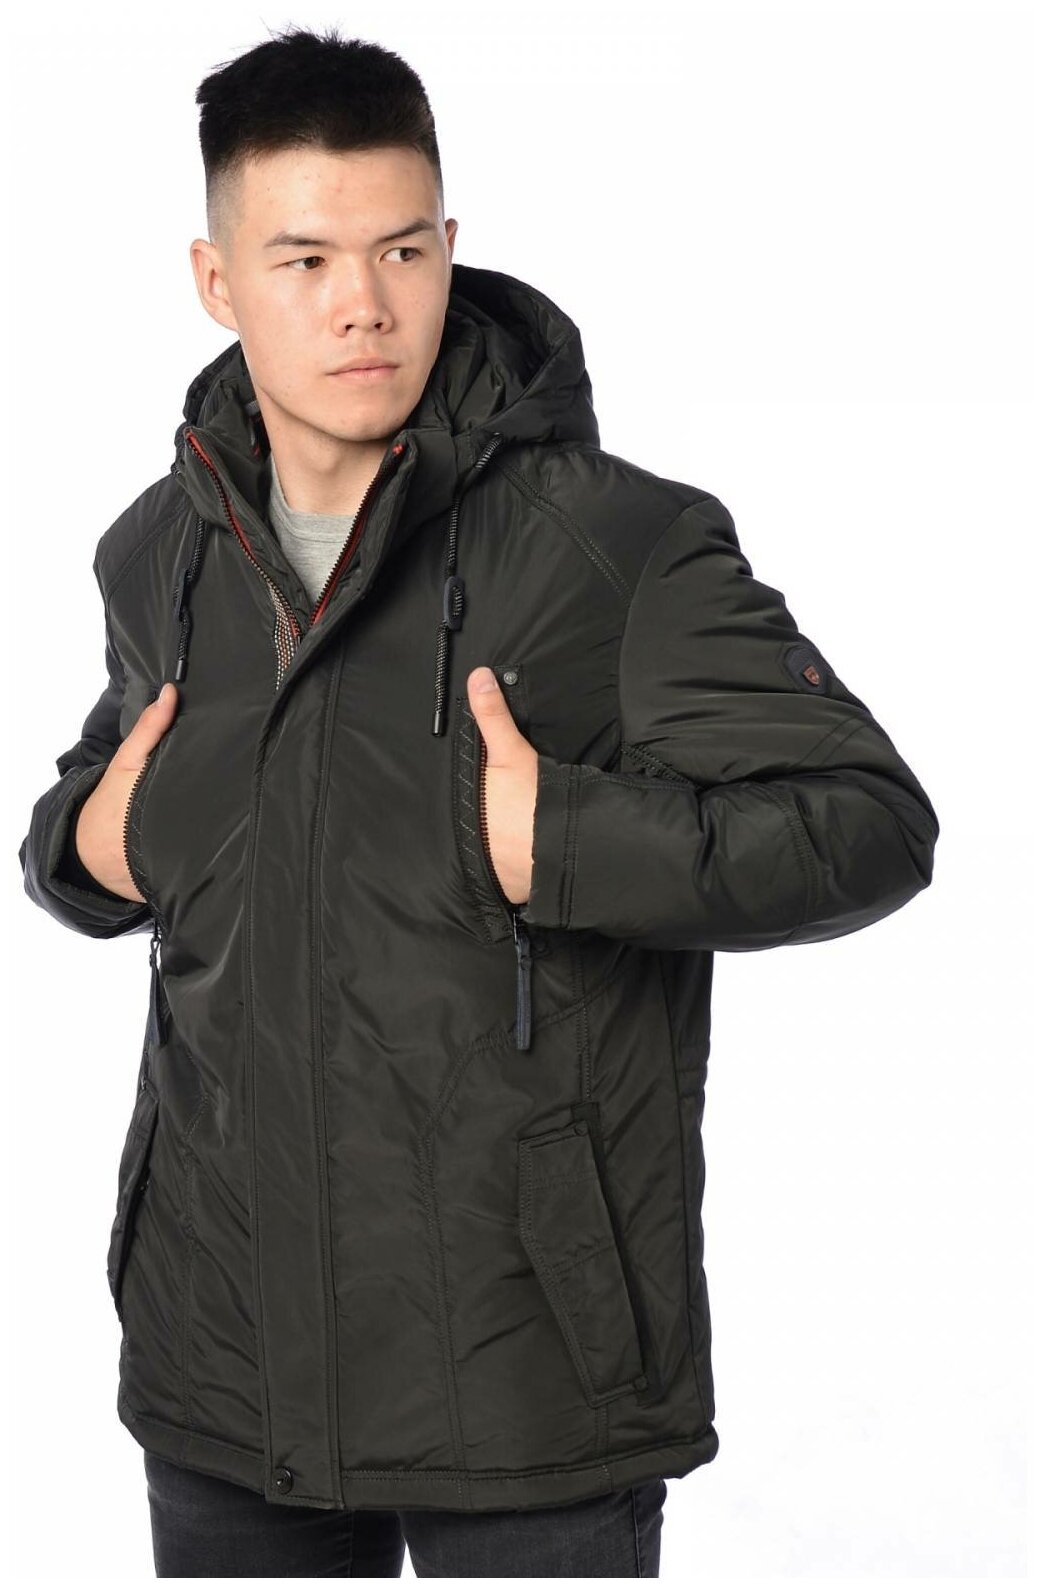 Зимняя куртка мужская INDACO 17014 размер 46 